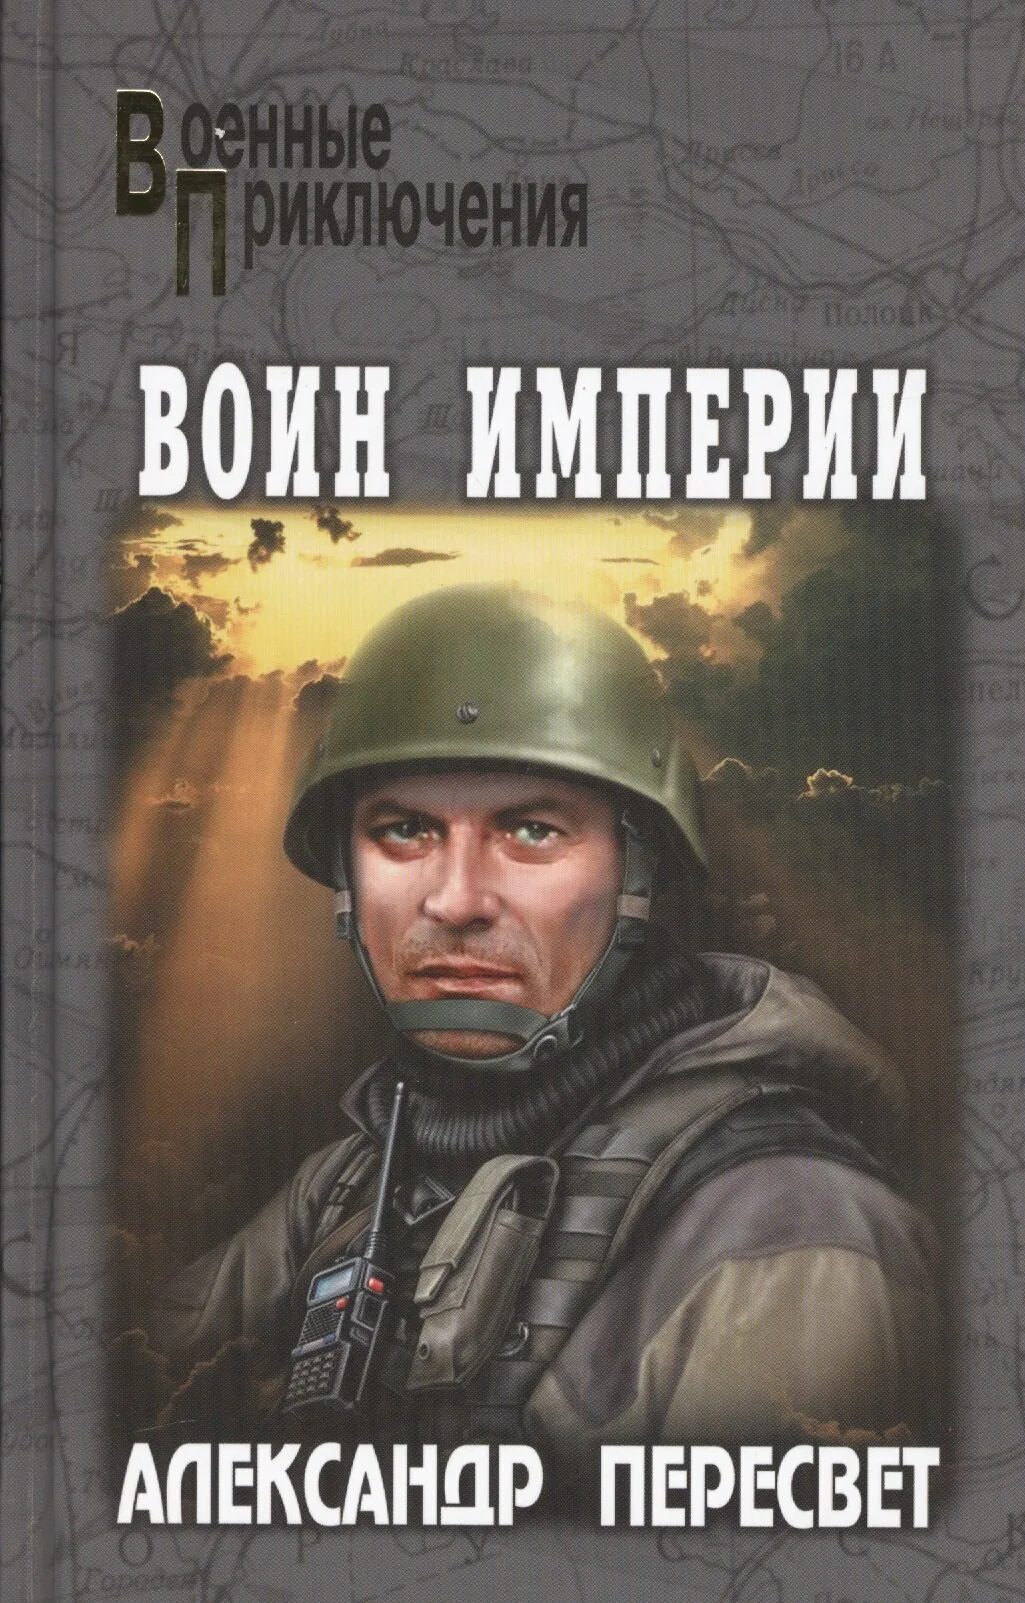 Отечественная приключенческая литература. Военные приключения книги. Книга воин.